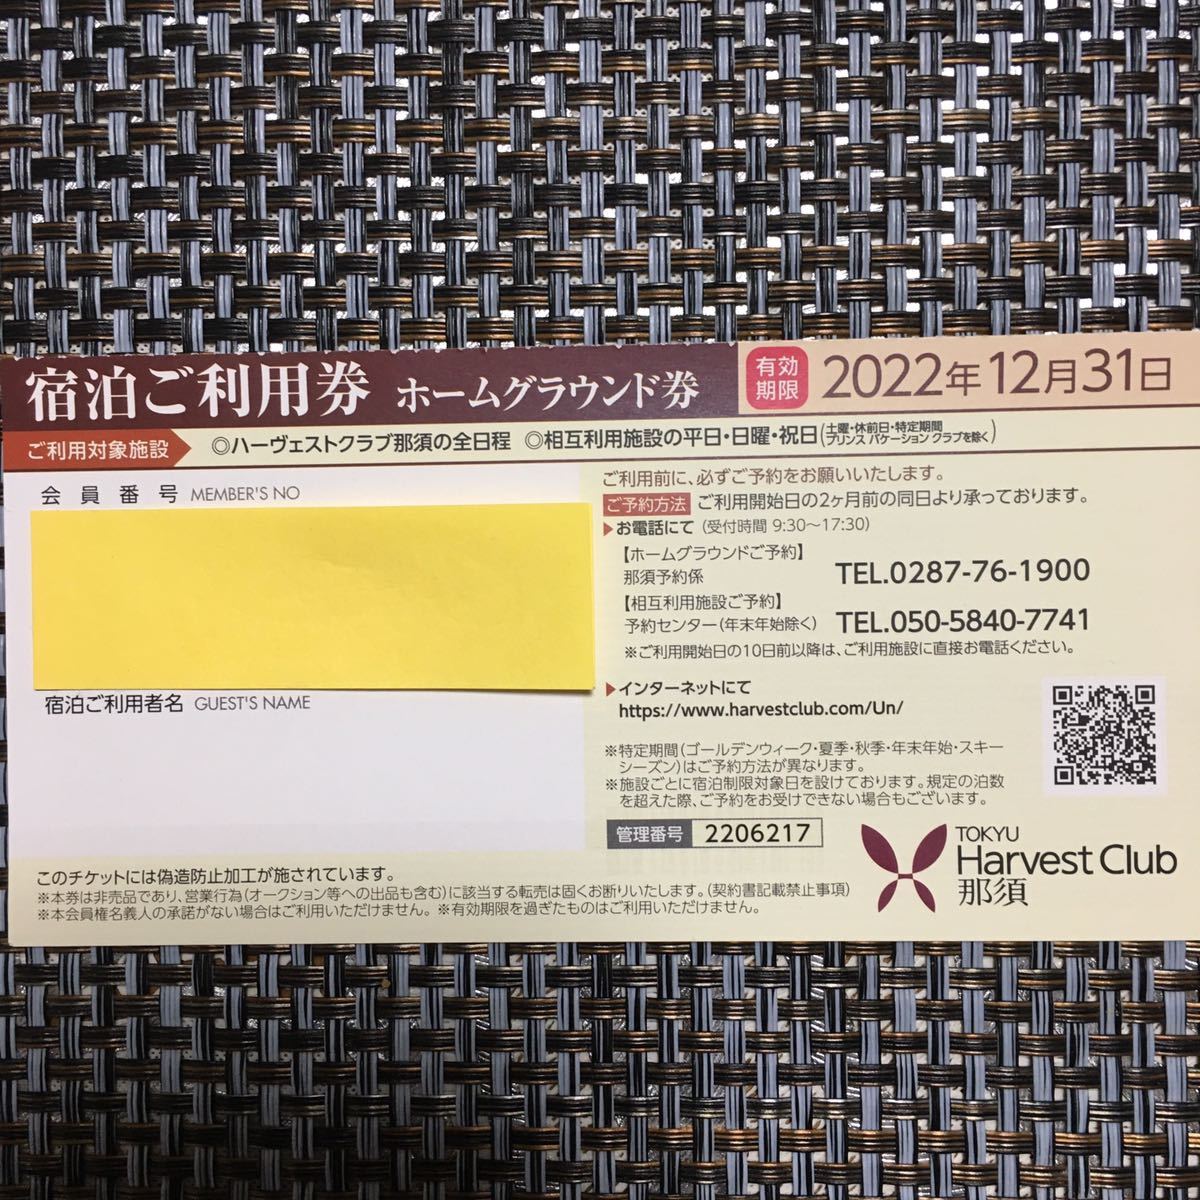 2022 Tokyu Harvest Club Nasu Home Ground Ticket * Продукт по доставке продукта по фиксированной почте бесплатна